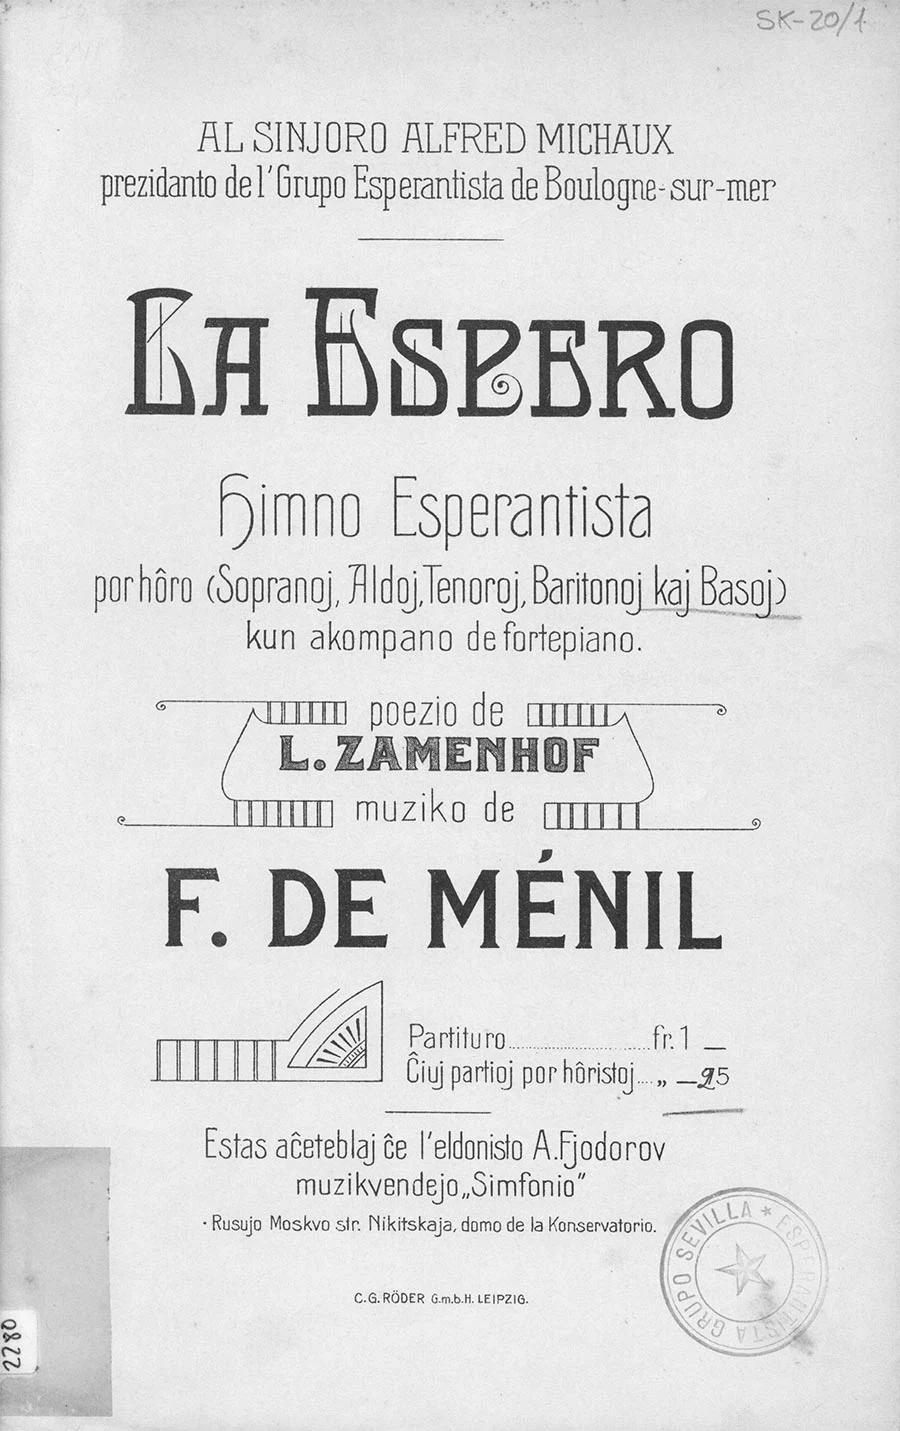 monochrome cover of a booklet with title La Espero